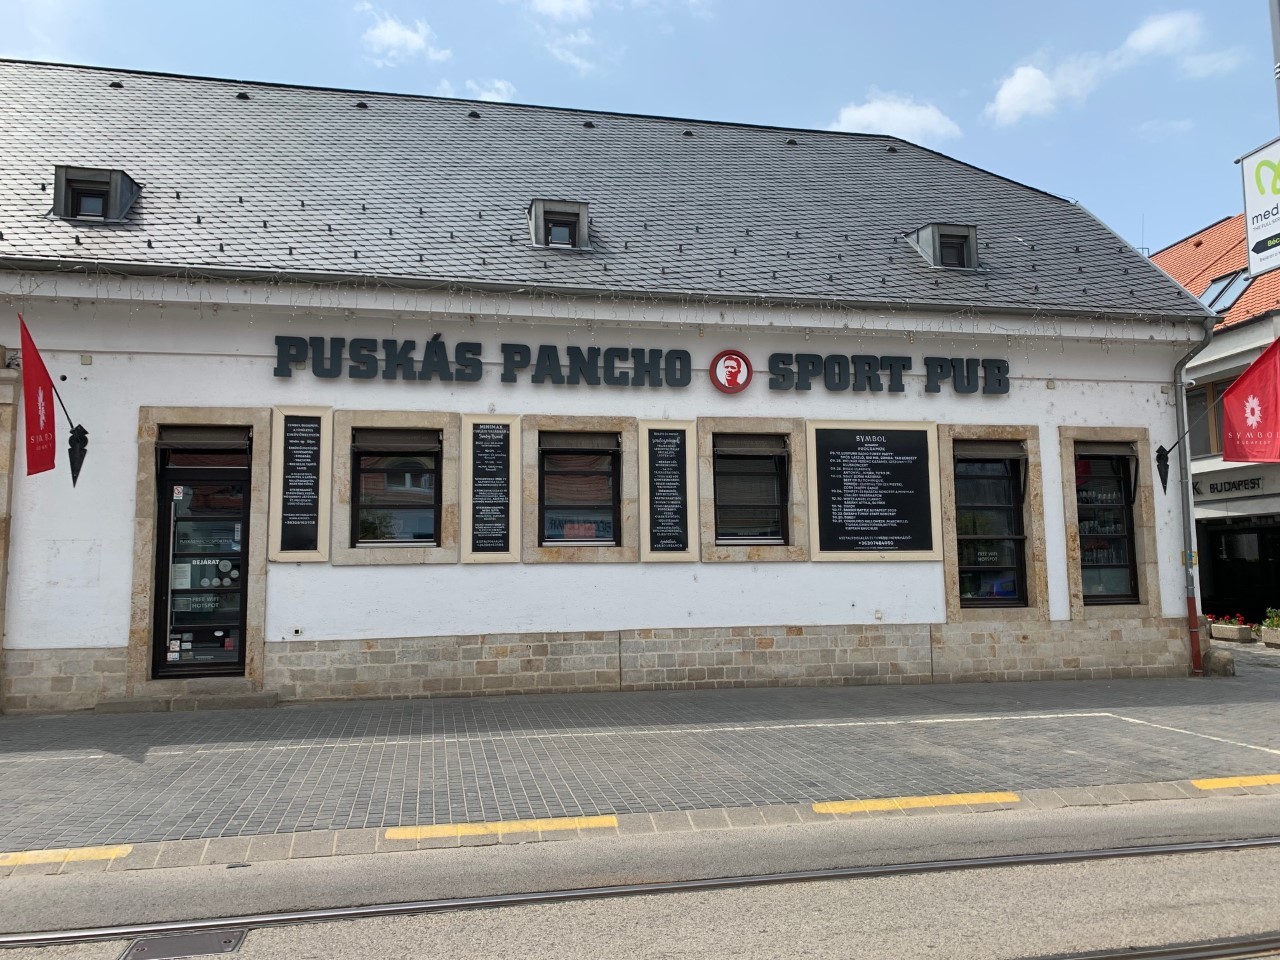 El bar que rinde homenaje a Puskas, en la calle Bcsi, en Buda.